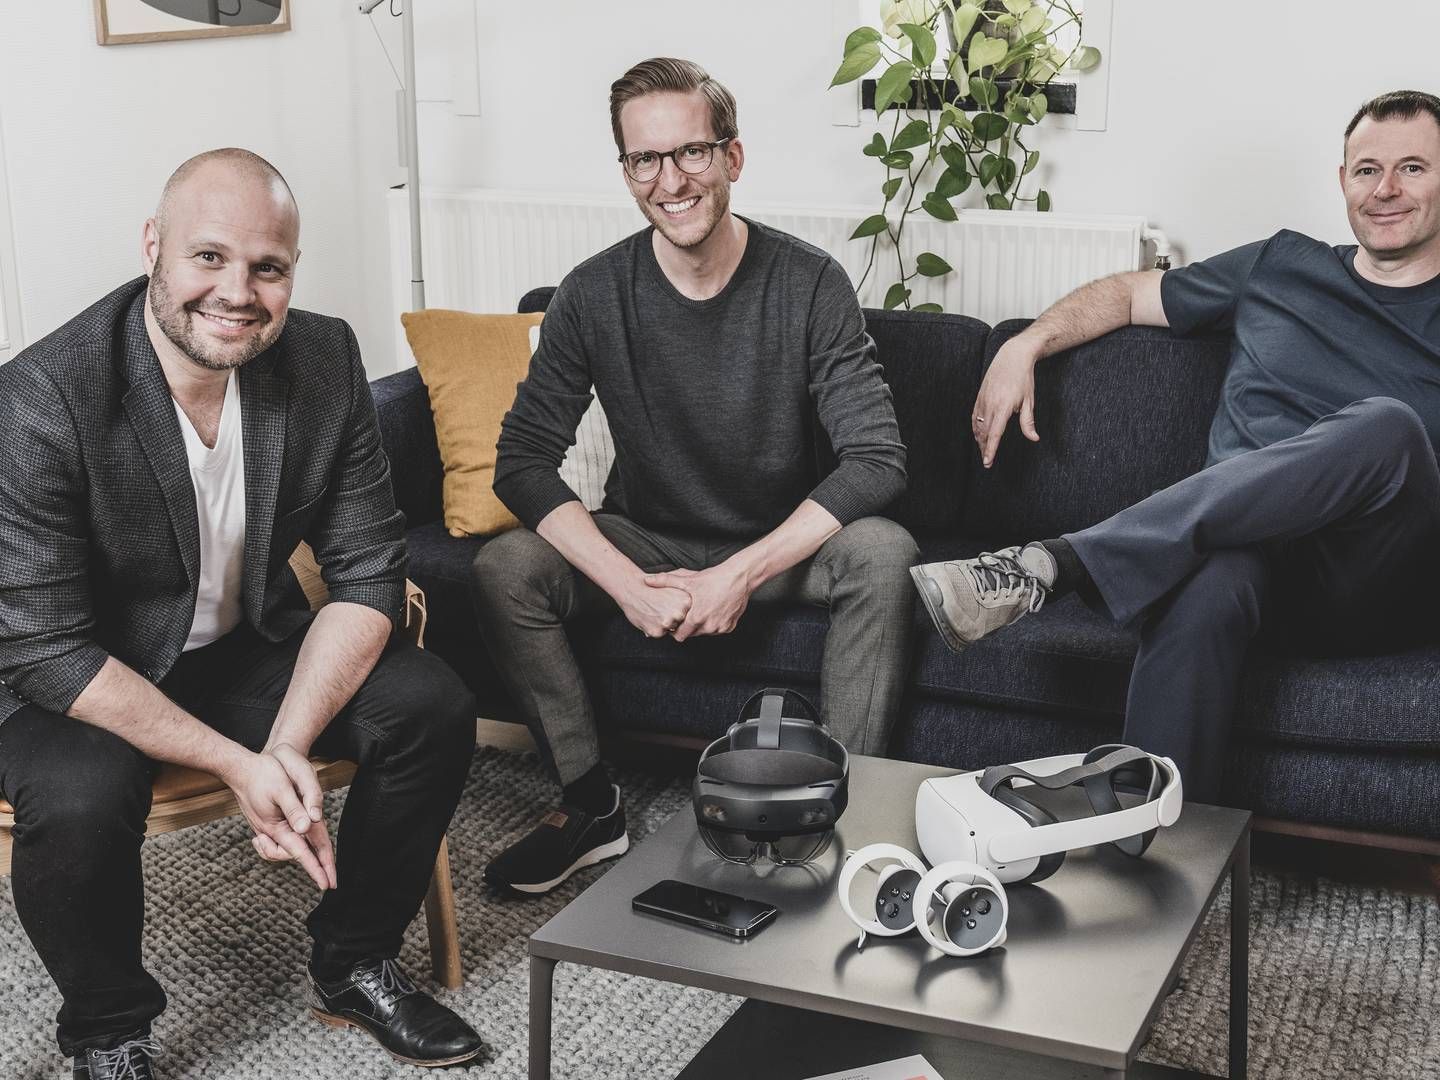 Ledelsen i SynergyXR, som har fået tilført ny kapital. Fra venstre mod højre: Mads Troelsgaard (CEO), Sune Wolff (CTO) og Thomas Fenger (CXO) | Foto: SynergyXR / PR